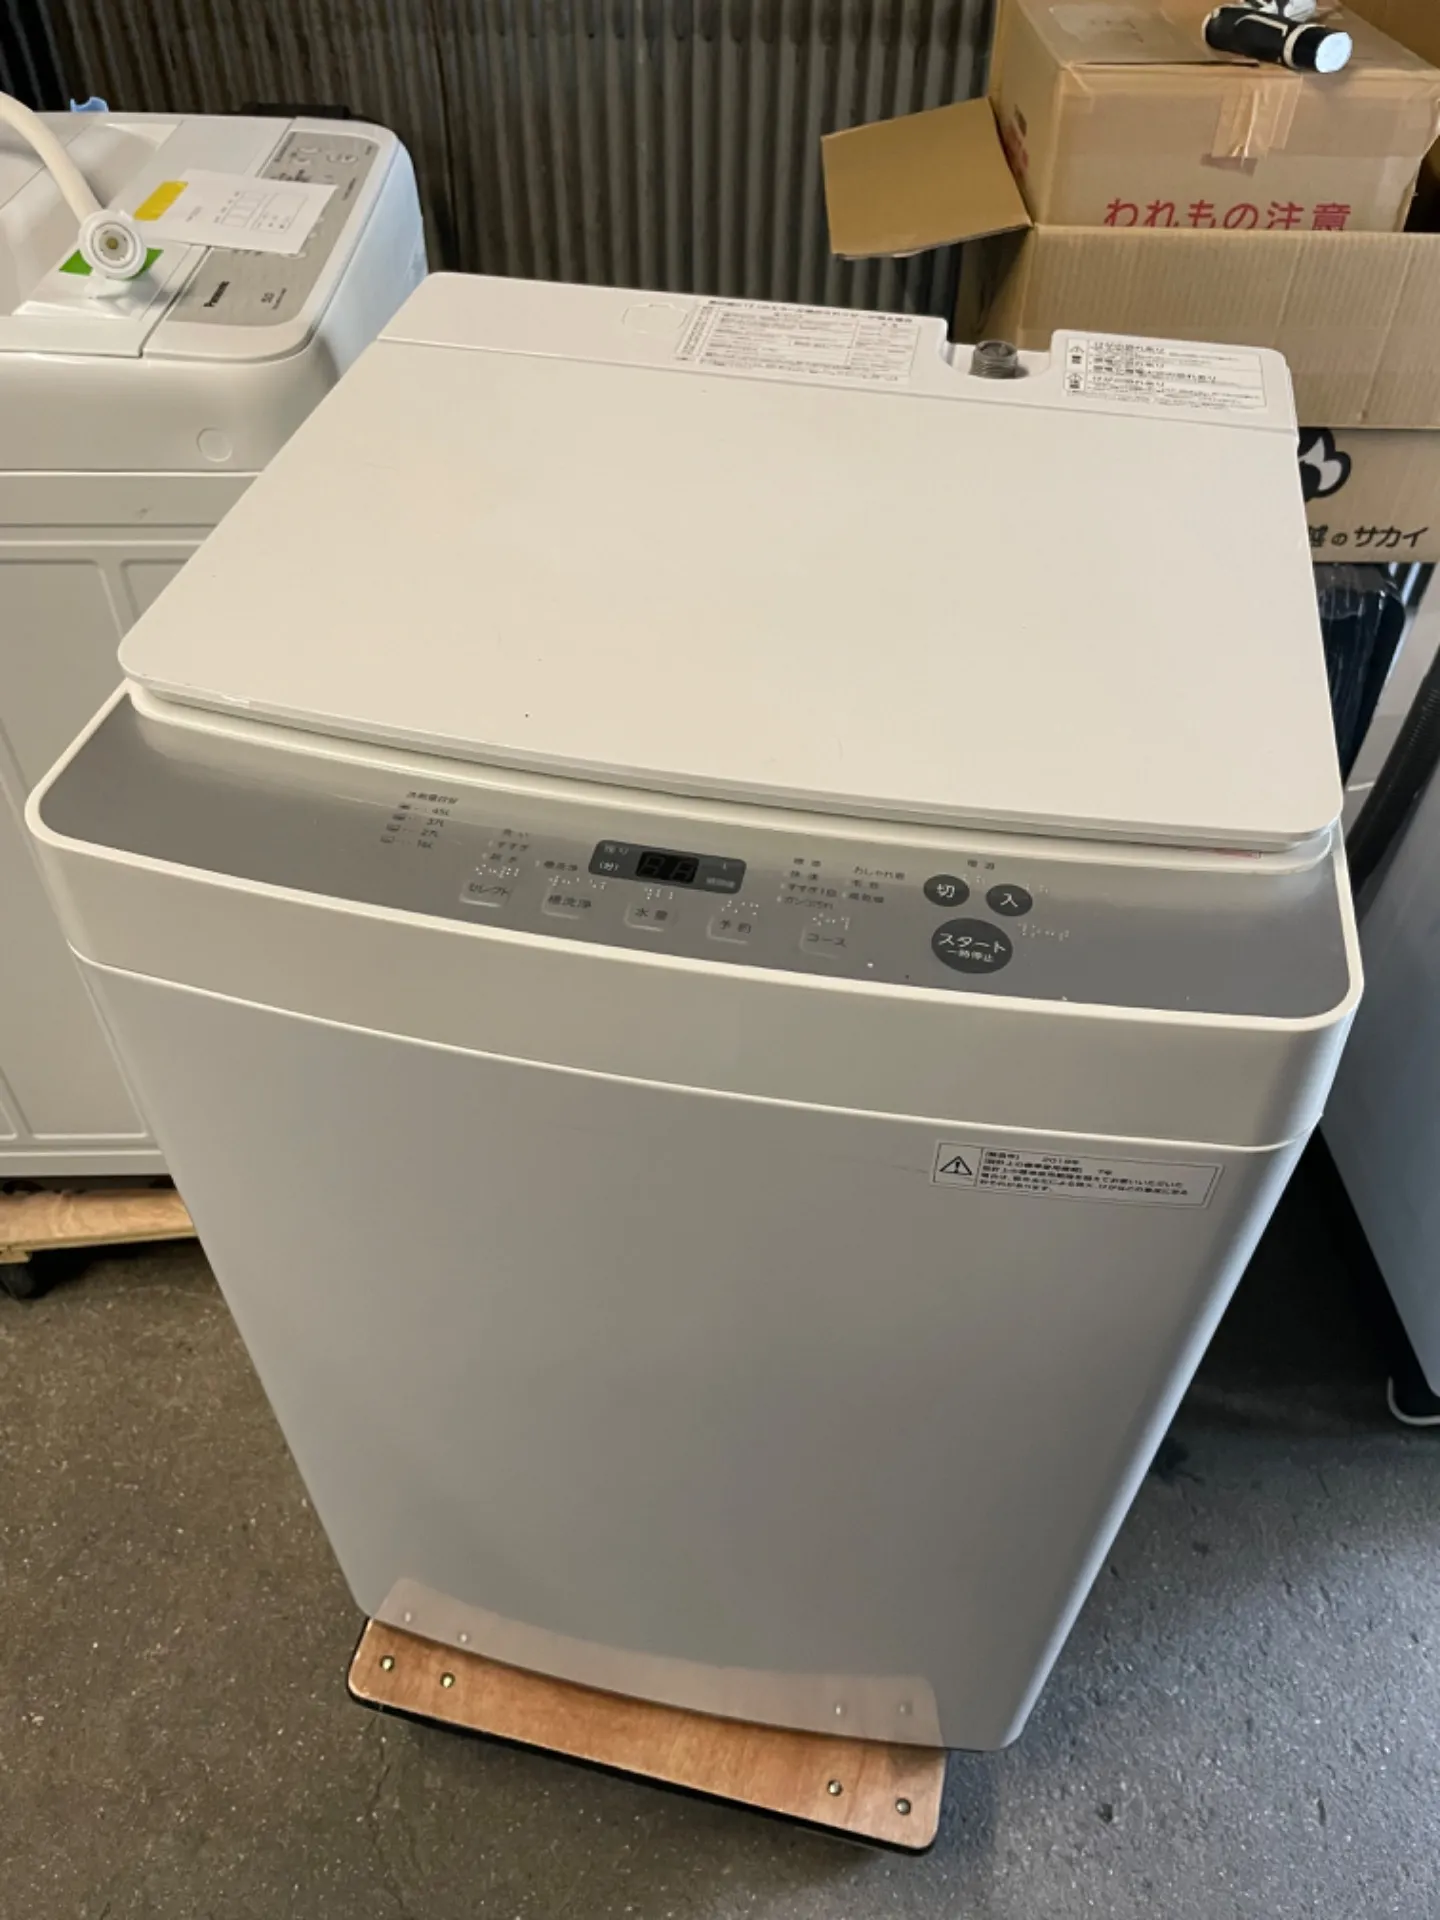 メーカー：ツインバード(KWM-EC55)<br>年式：2019年製<br>容量：洗濯5.5kg<br>管理番号：6T020275